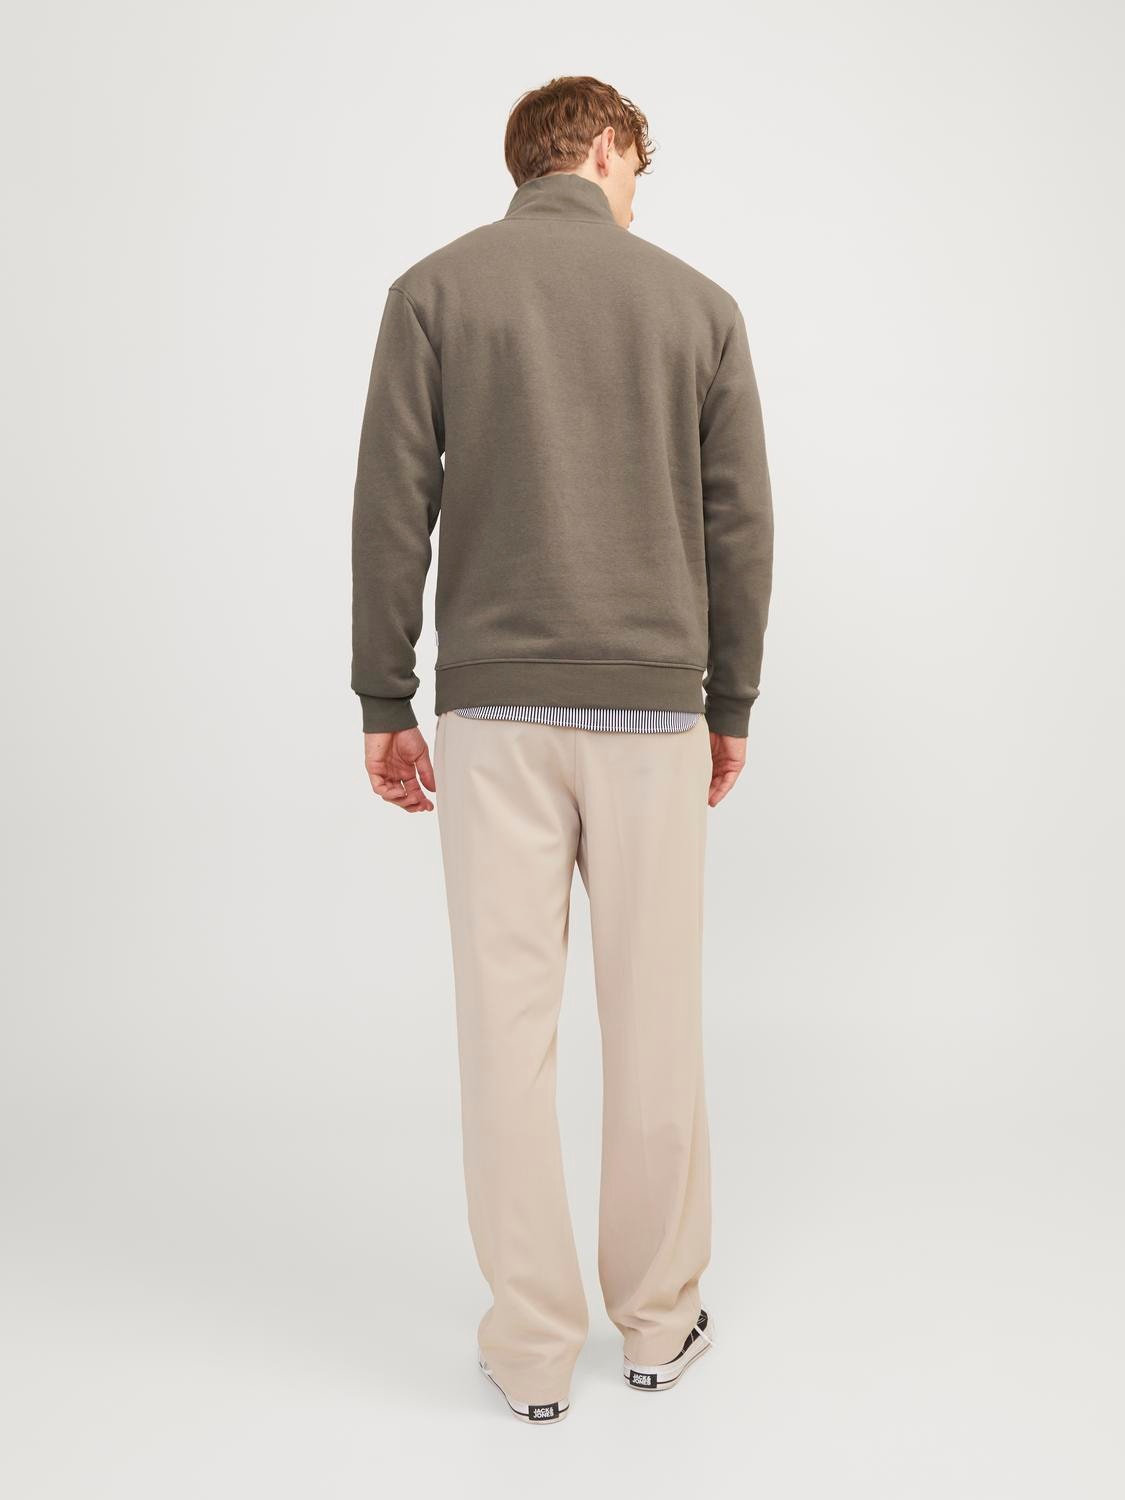 Jack & Jones Plain Half Zip Sweatshirt -Bungee Cord - 12250747